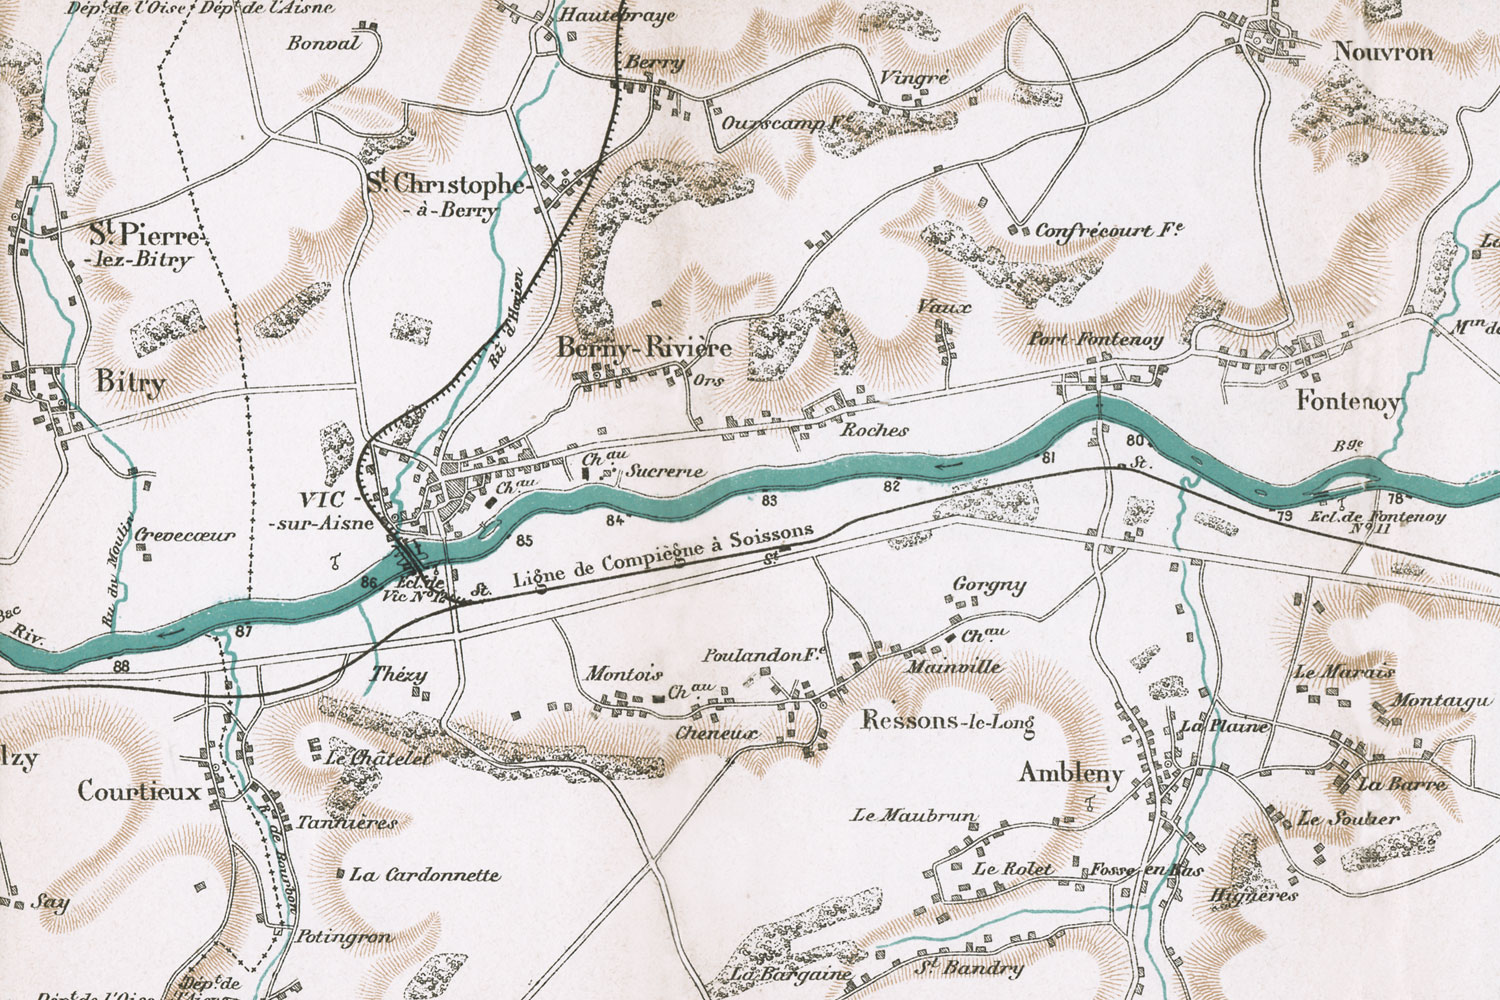 Extrait de la Carte du cours de l'Aisne et du canal latéral à l’Aisne par R. Vuillaume, 1888